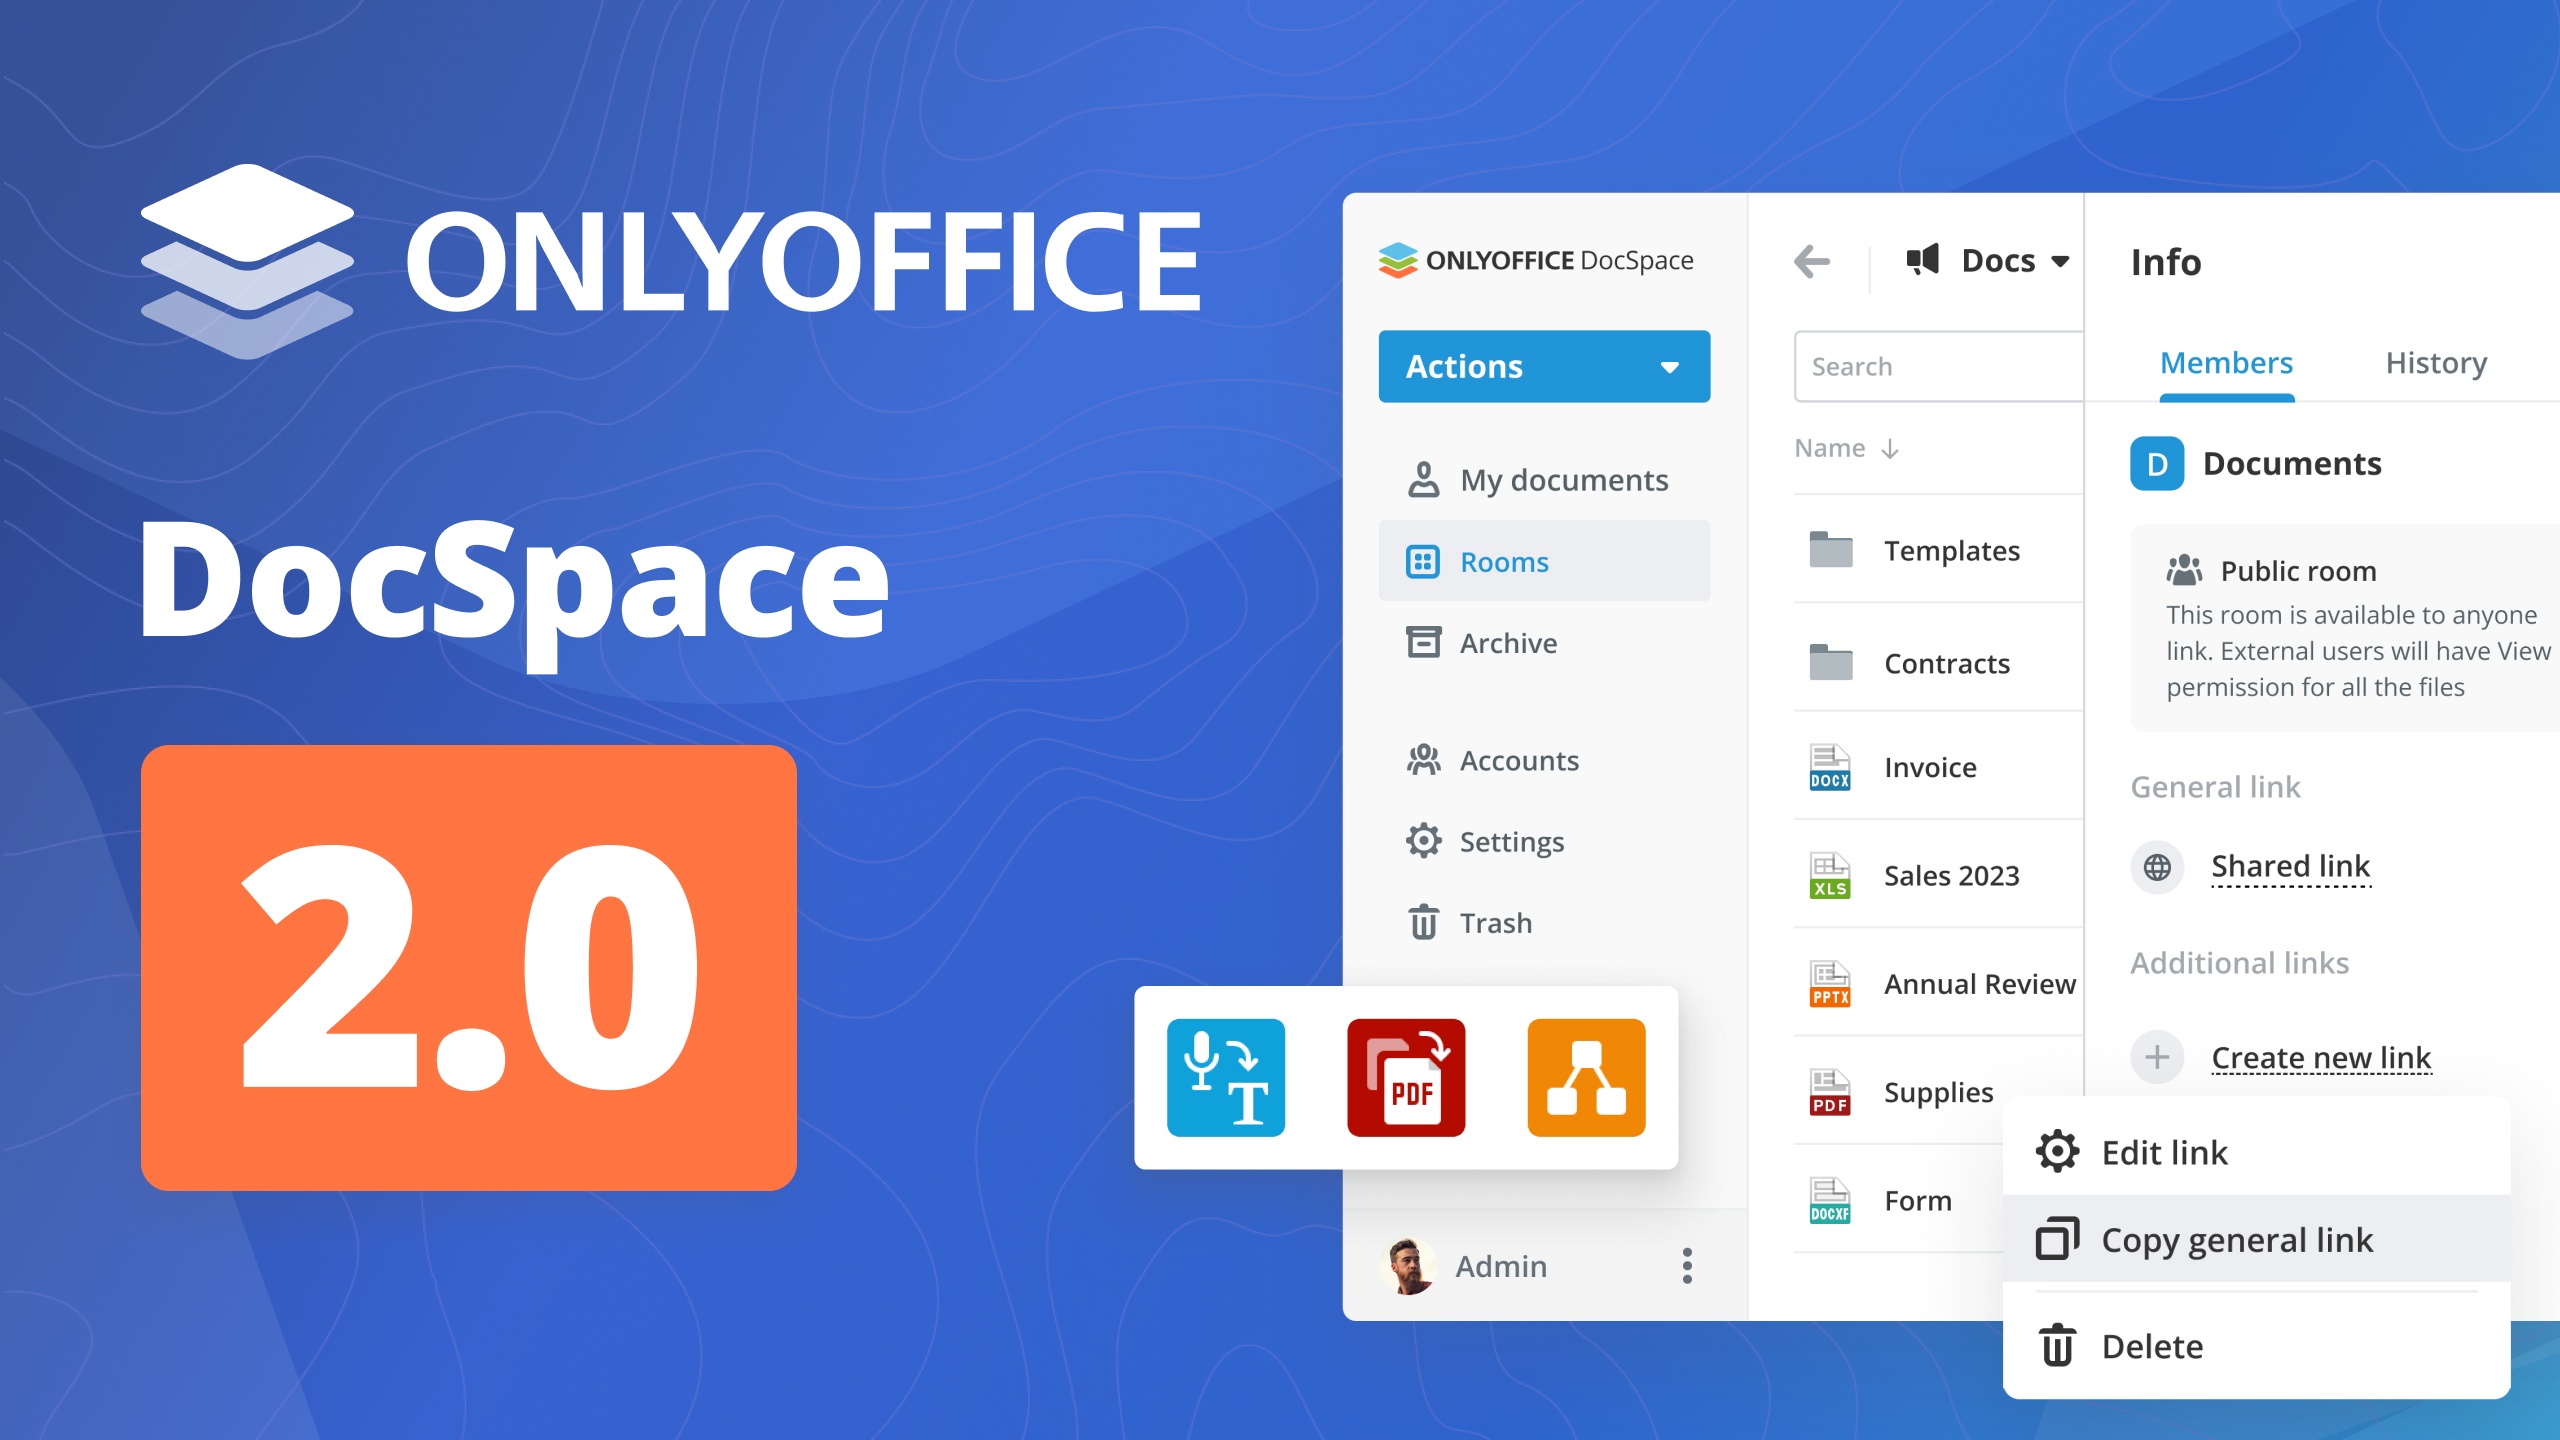 Onlyoffice DocSpace 2.0 lanzado con salas públicas, complementos, reasignación de datos, interfaz RTL y otras mejoras